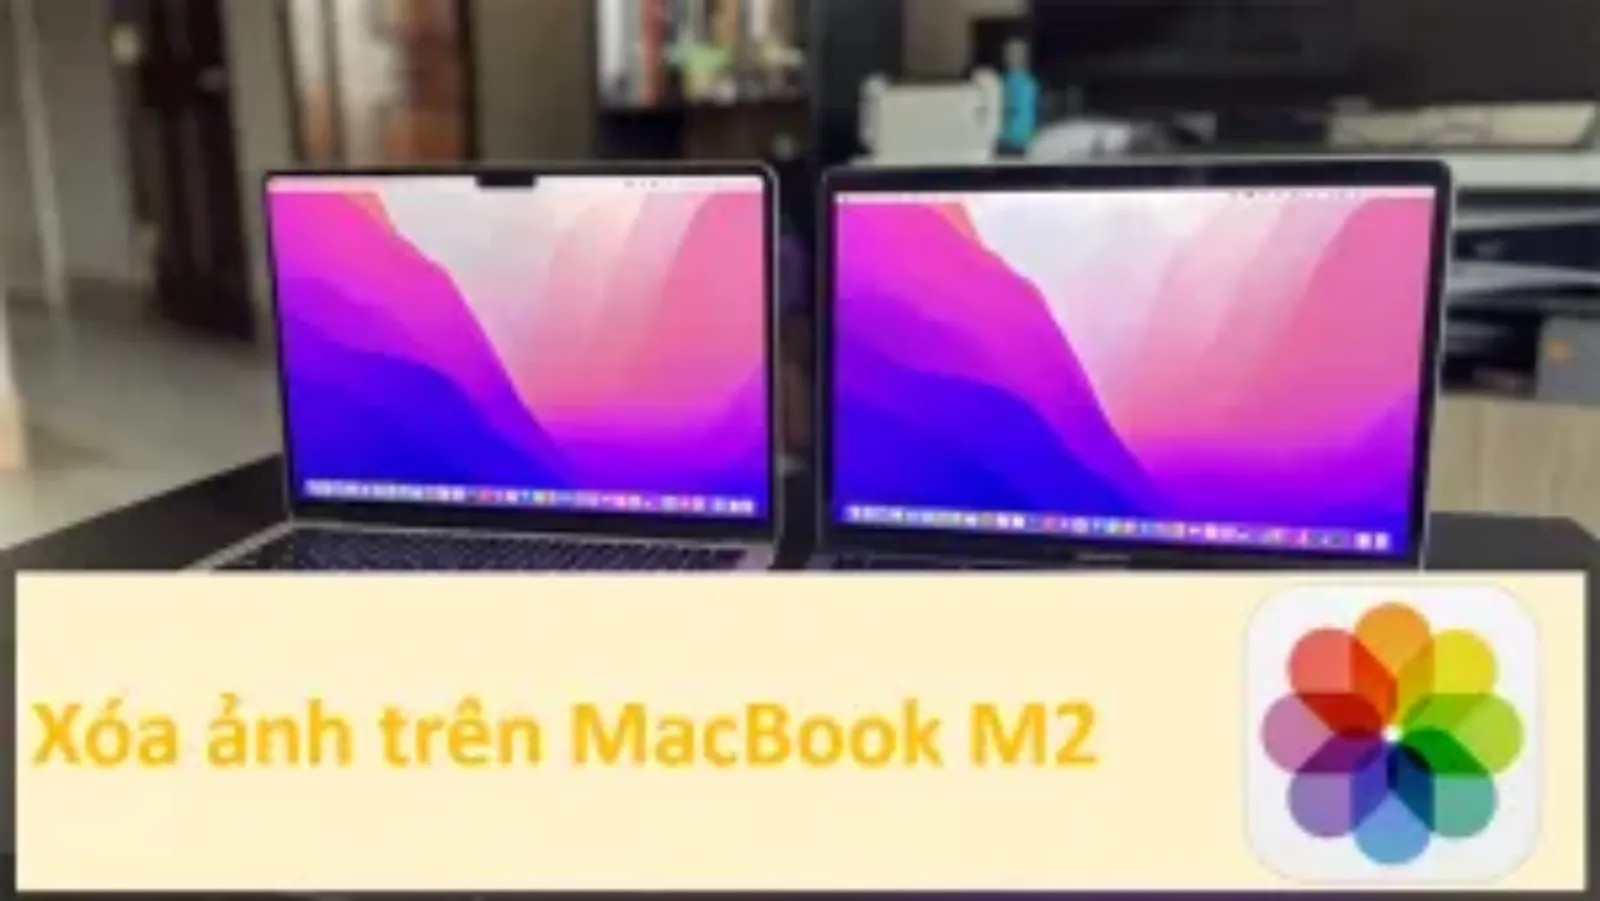 MacBook M2 mạnh mẽ hơn, tiết kiệm pin hơn, và đặc biệt hơn là giúp người dùng xoá ảnh một cách nhanh chóng, trơn tru hơn. Không còn tình trạng giật lag hay quá trình xoá kéo dài, sản phẩm này đem đến trải nghiệm mới mẻ cho người dùng.